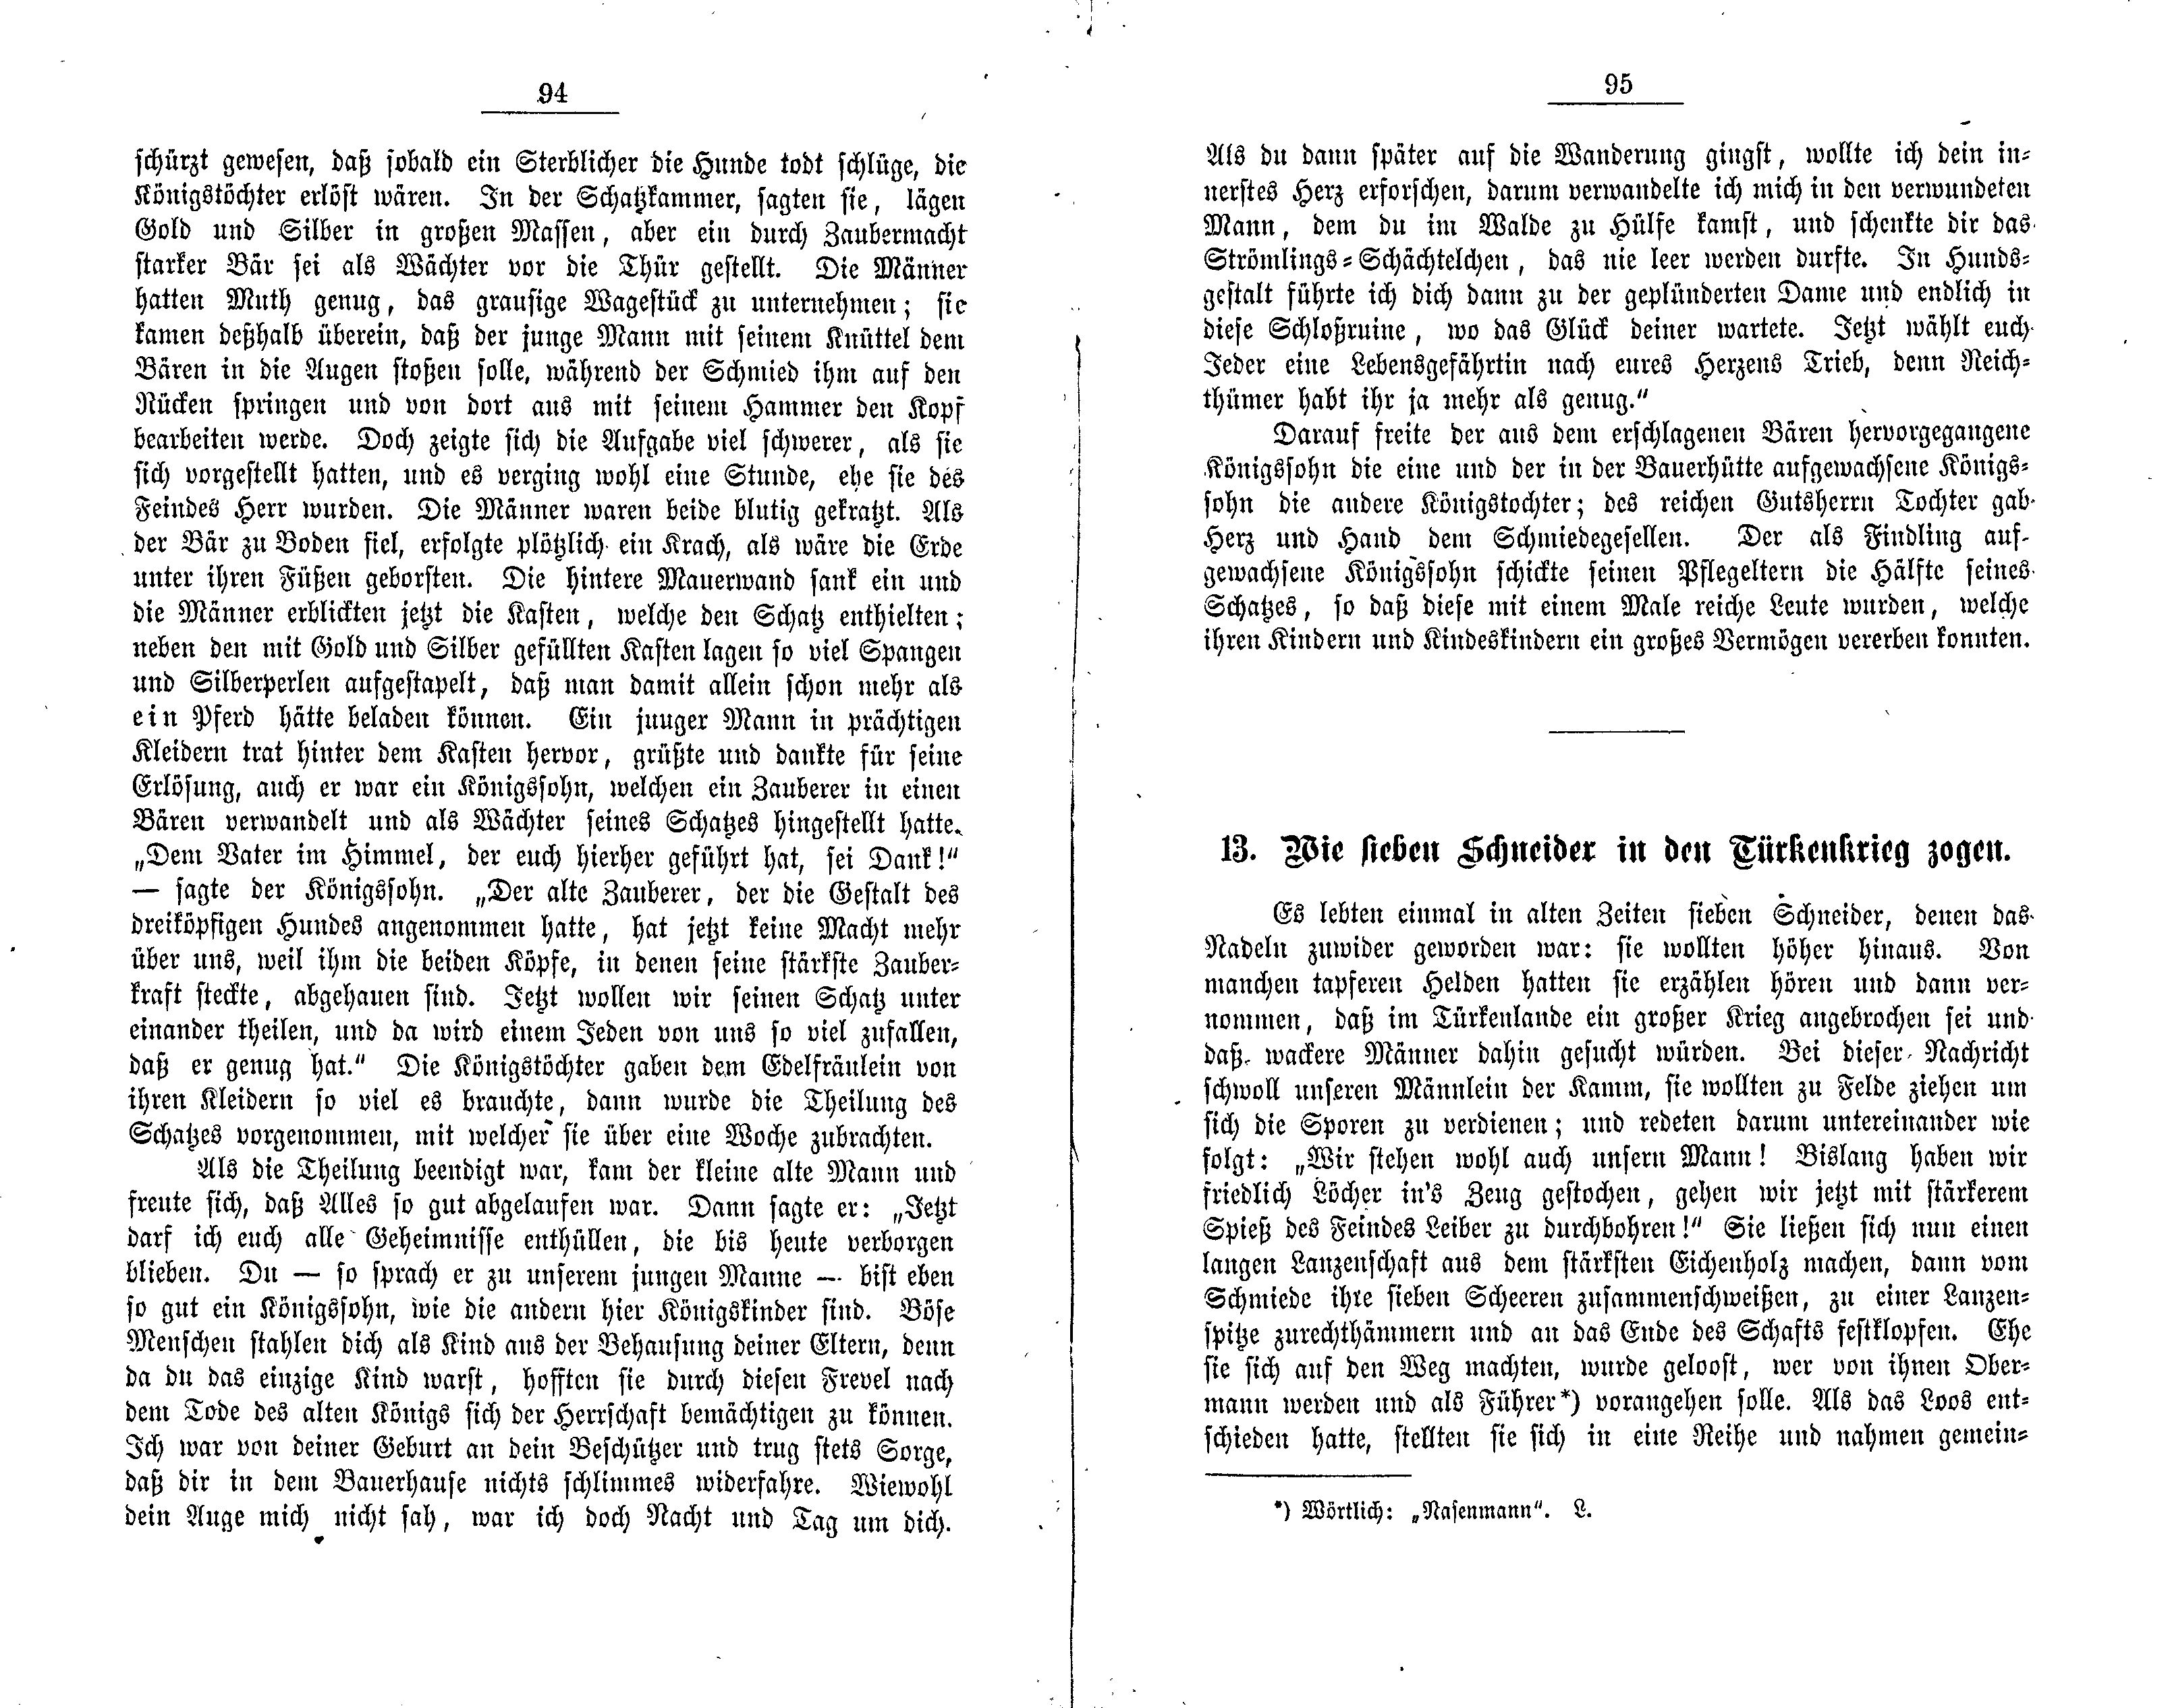 Wie sieben Schneider in den Türkenkrieg zogen (1881) | 1. (94-95) Main body of text